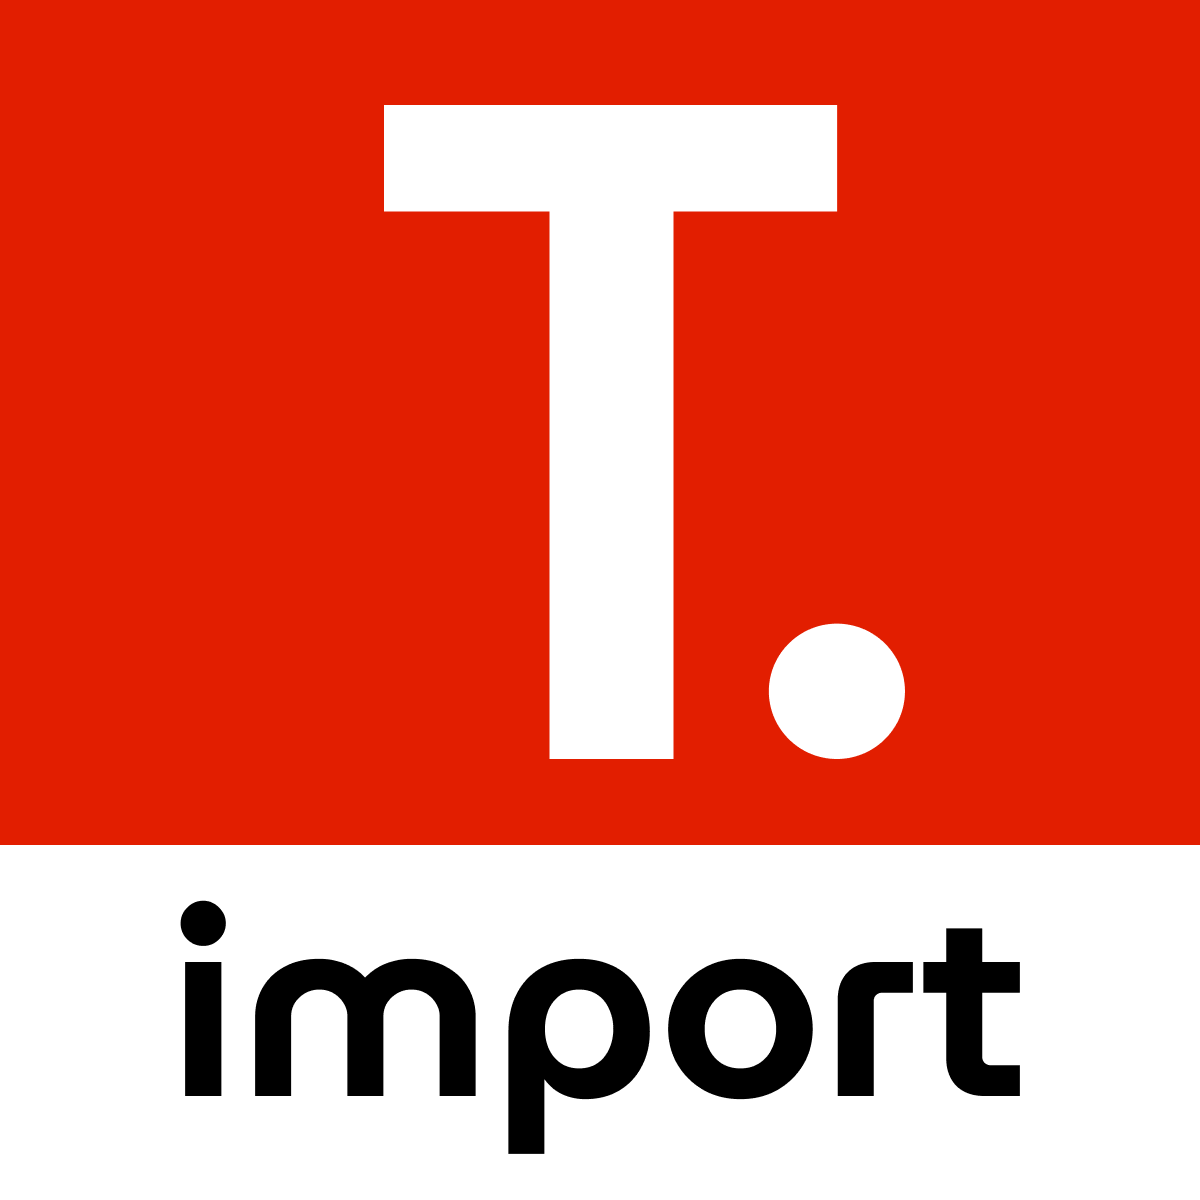 TT Aliexpress Reviews Importer